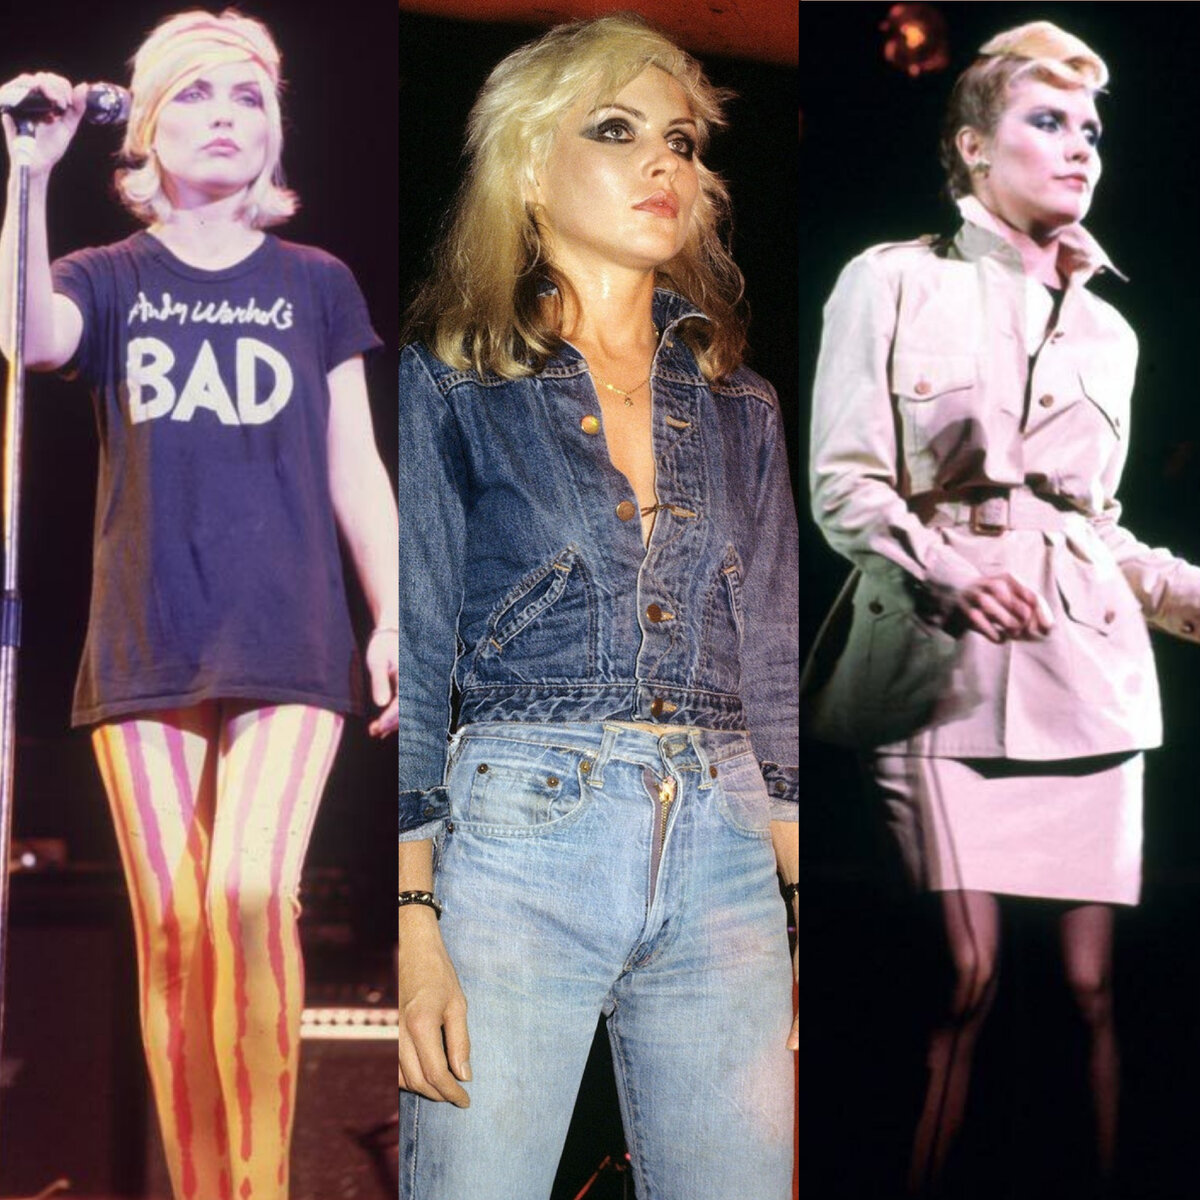  В 80-х появилась масса стилей, которые шокировали и восхищали: от коротких стрижек до гранжа (рваные джинсы, ботинки и много кожи).-24